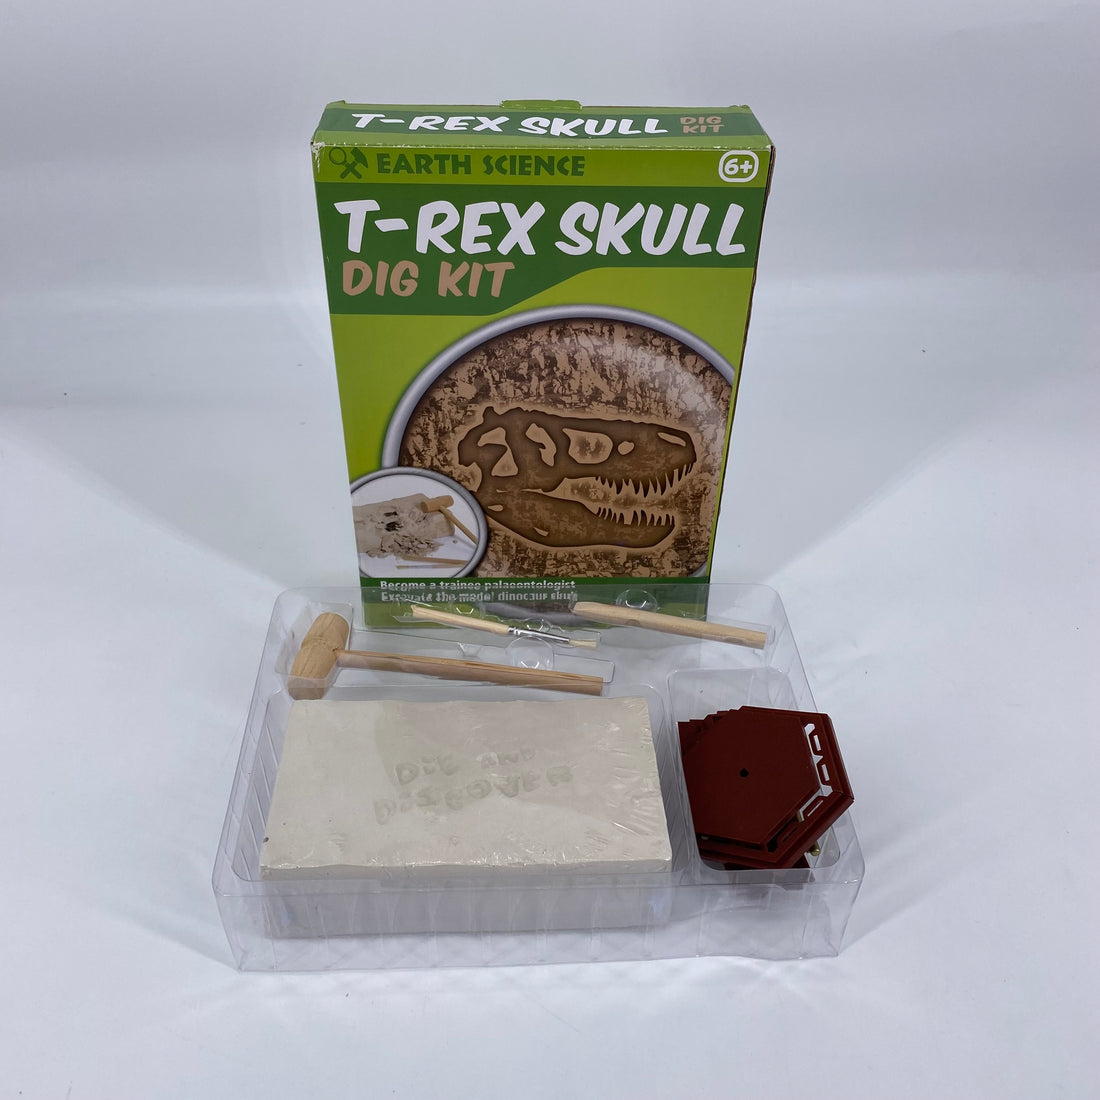 T-rex skull - Dig it